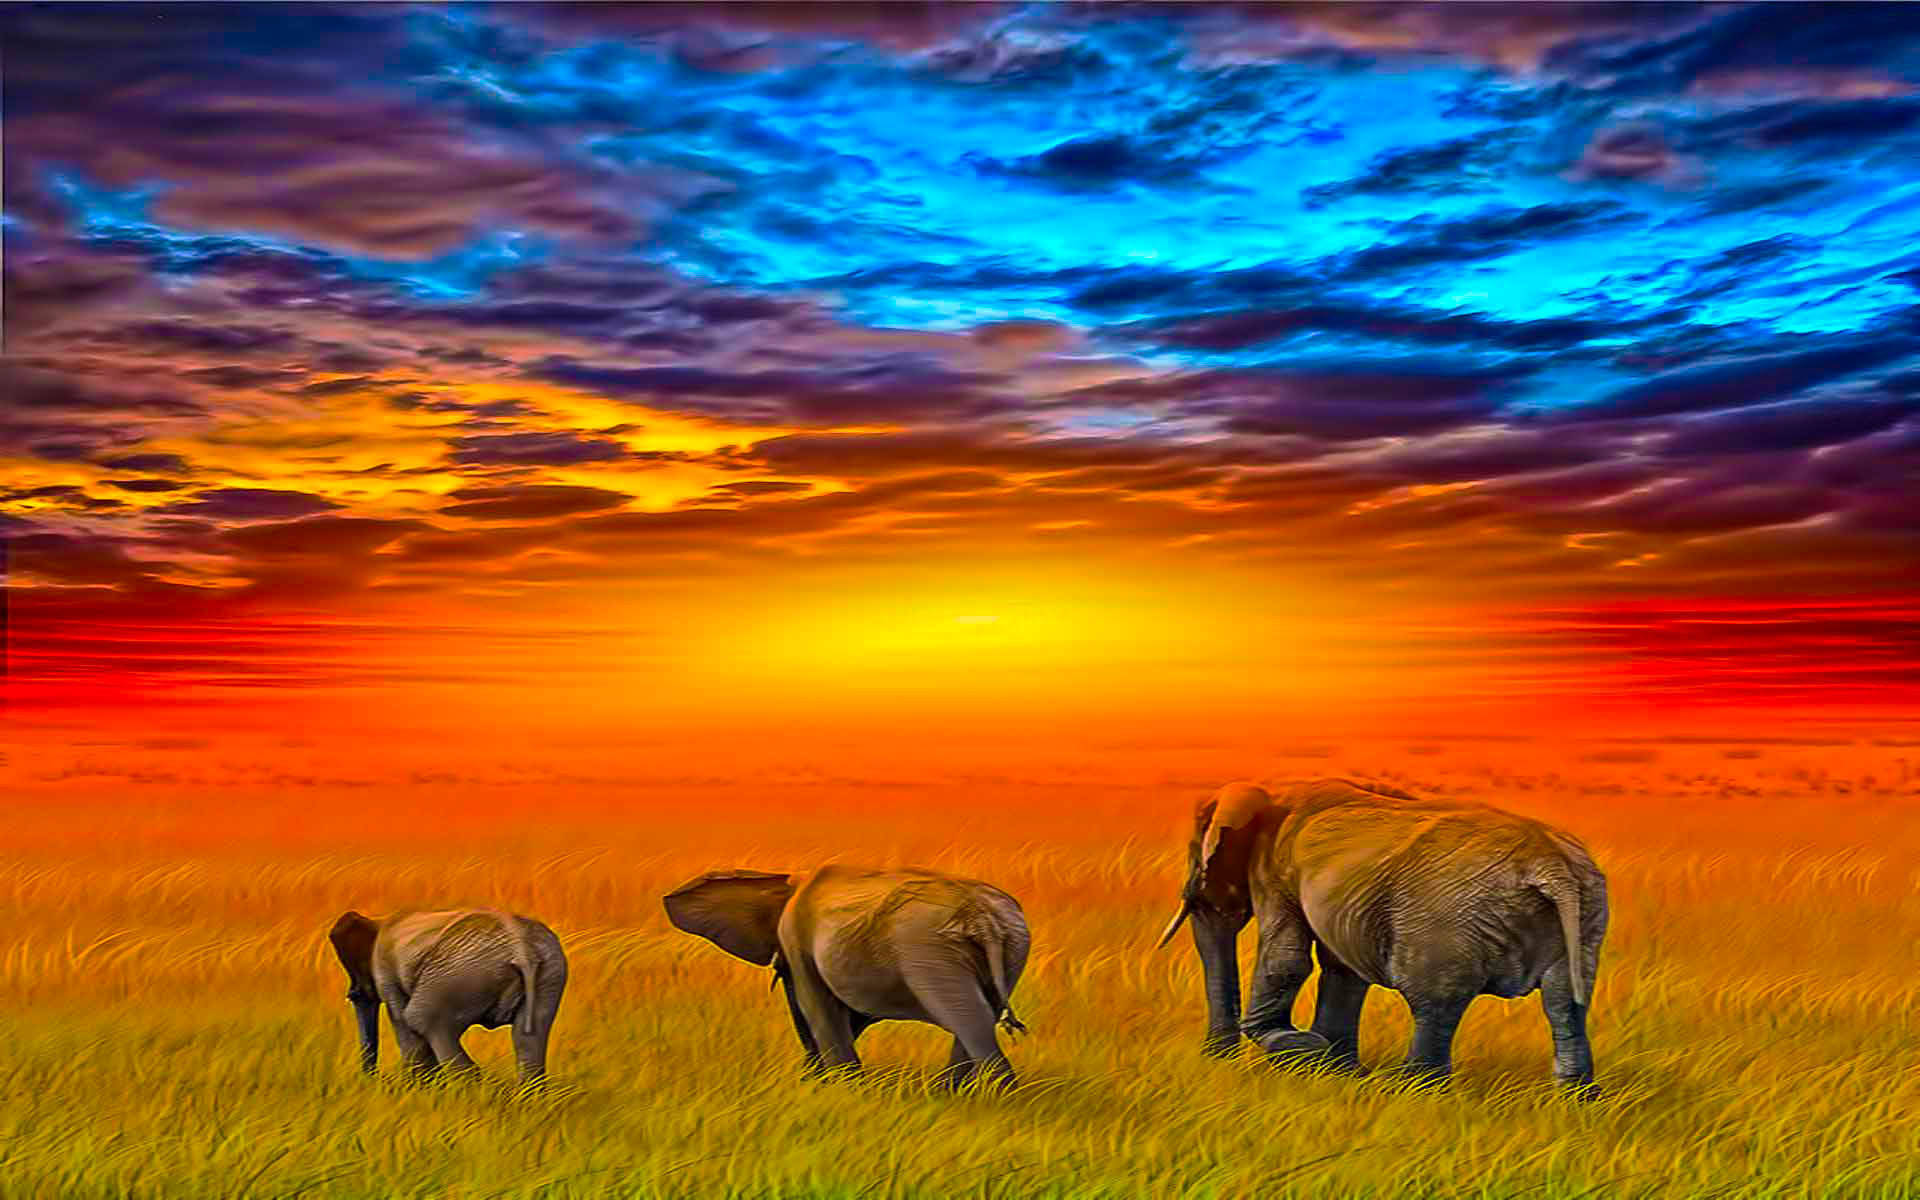 Elephants In Africa Digital Art